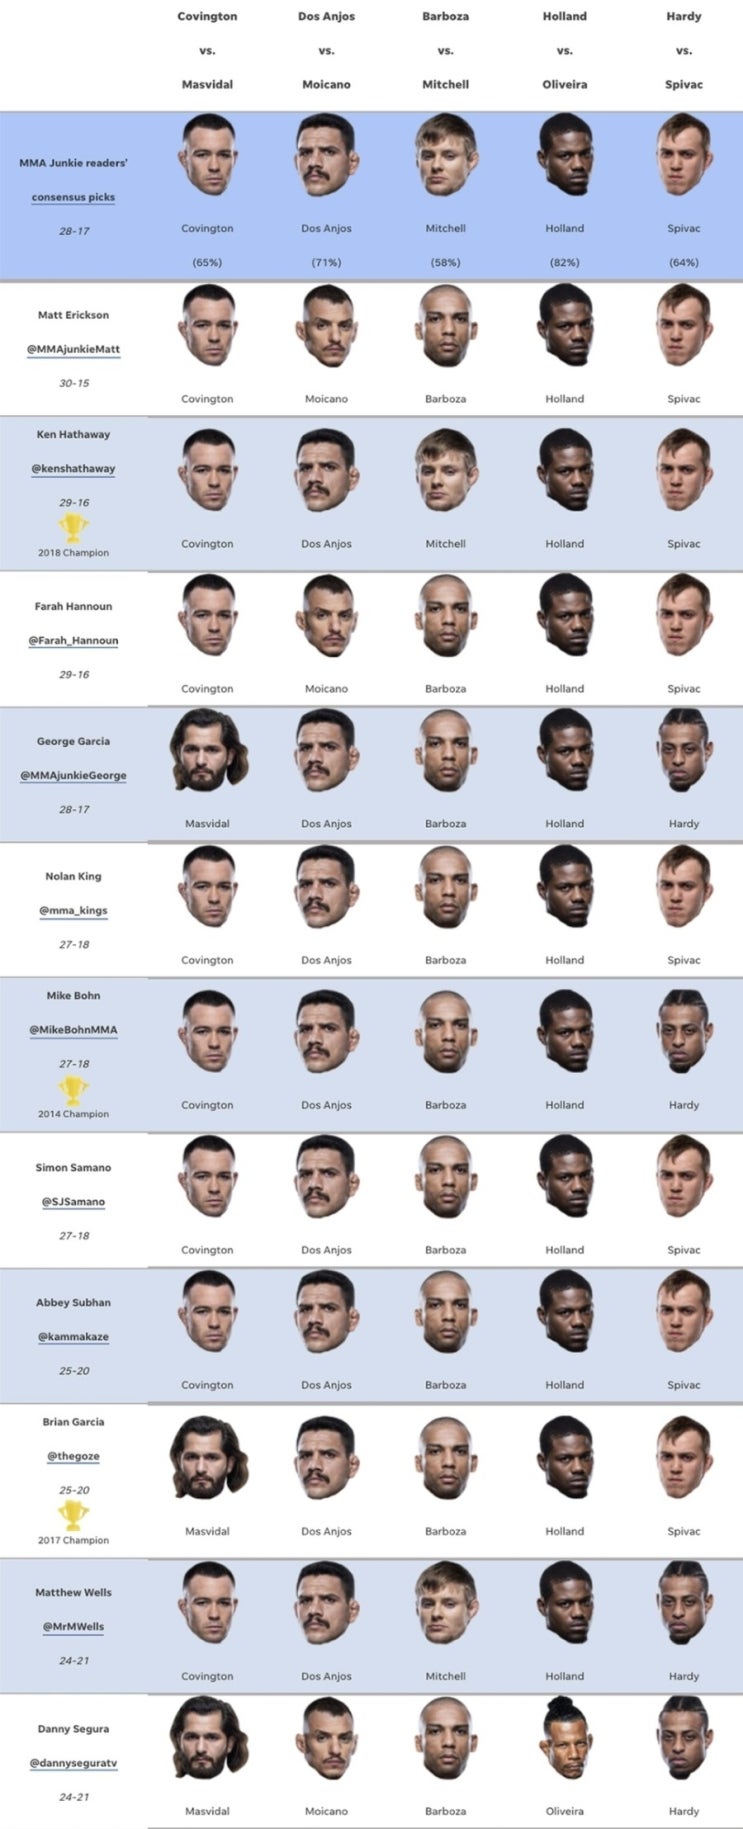 UFC 272: 콜비 코빙턴 vs 호르헤 마스비달 미디어 예상과 배당률